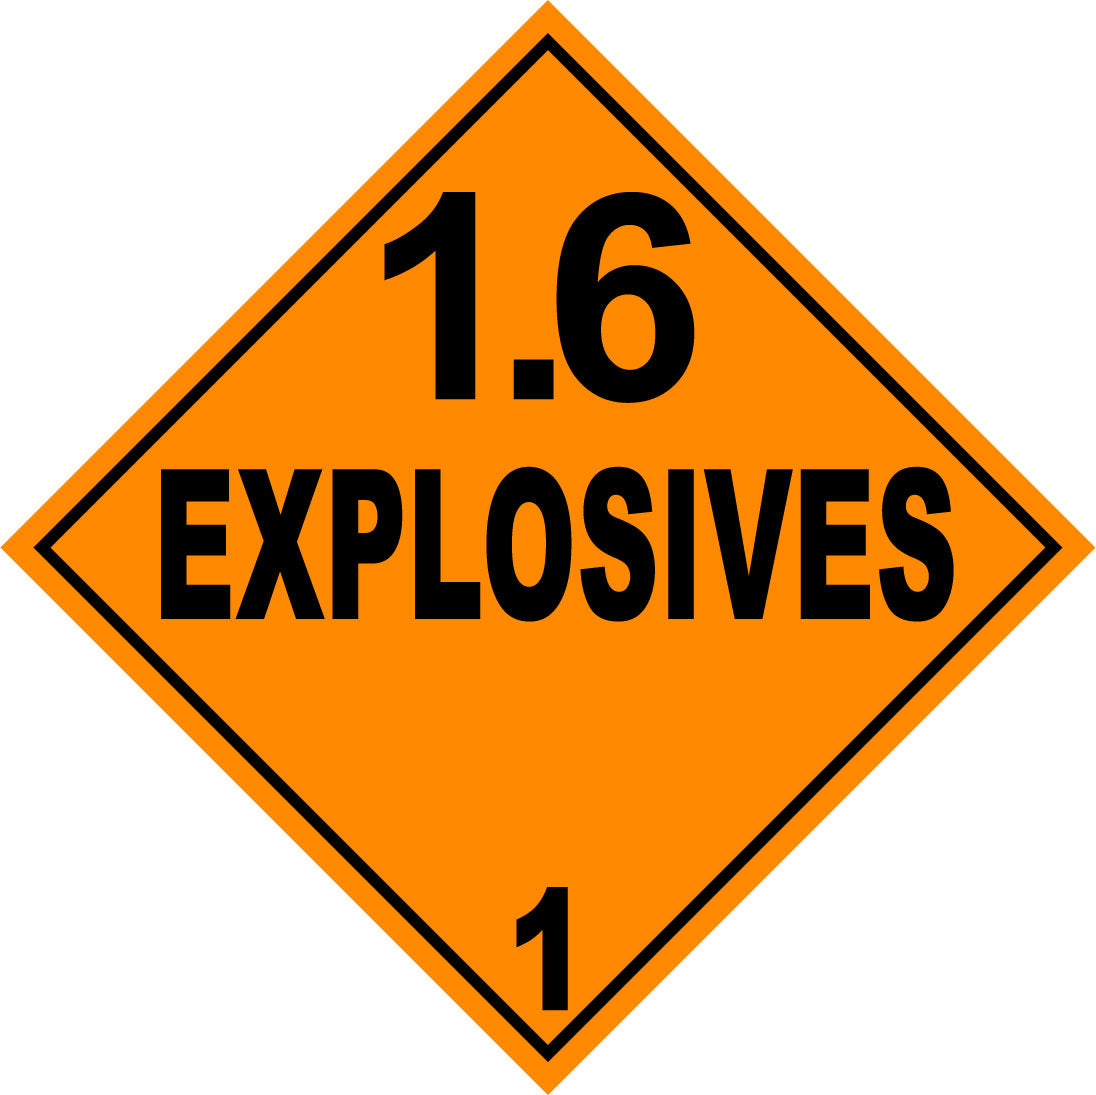 Class 1.6 Explosives HAZMAT Warning Sticker Label